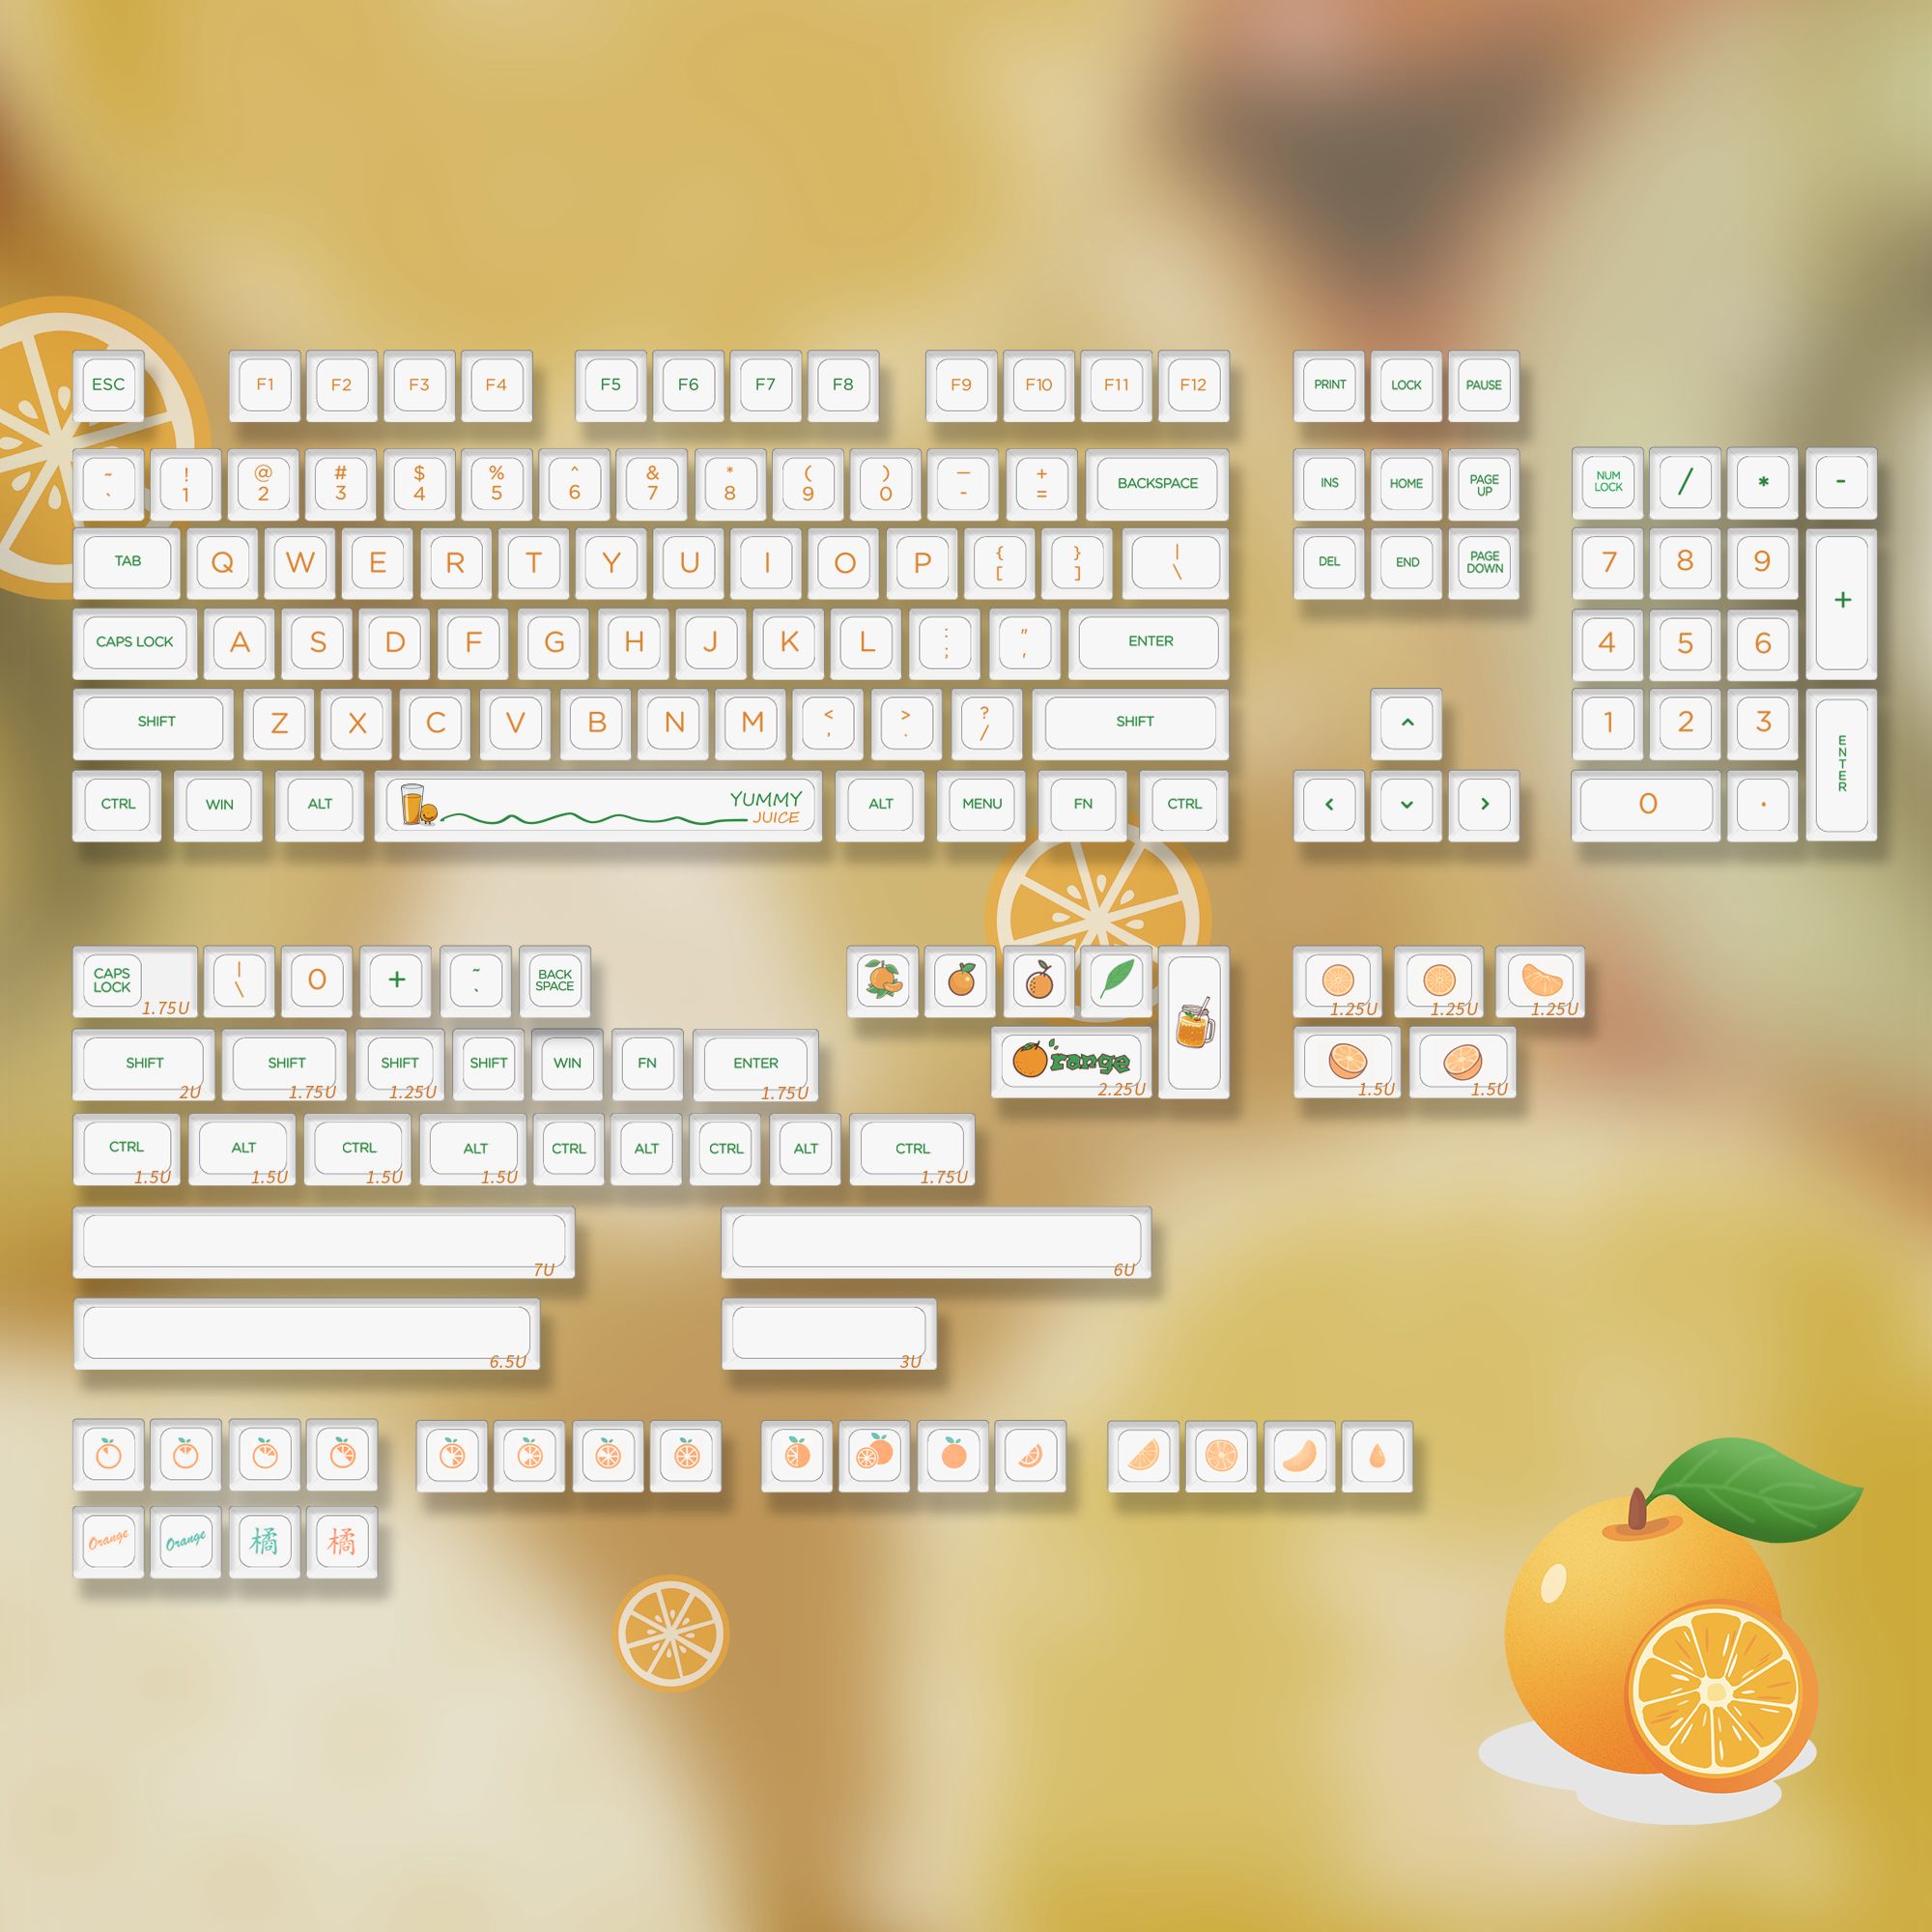 NP Orange Dye-sub Keycaps Set For Customized MX Mechanical Keyboard